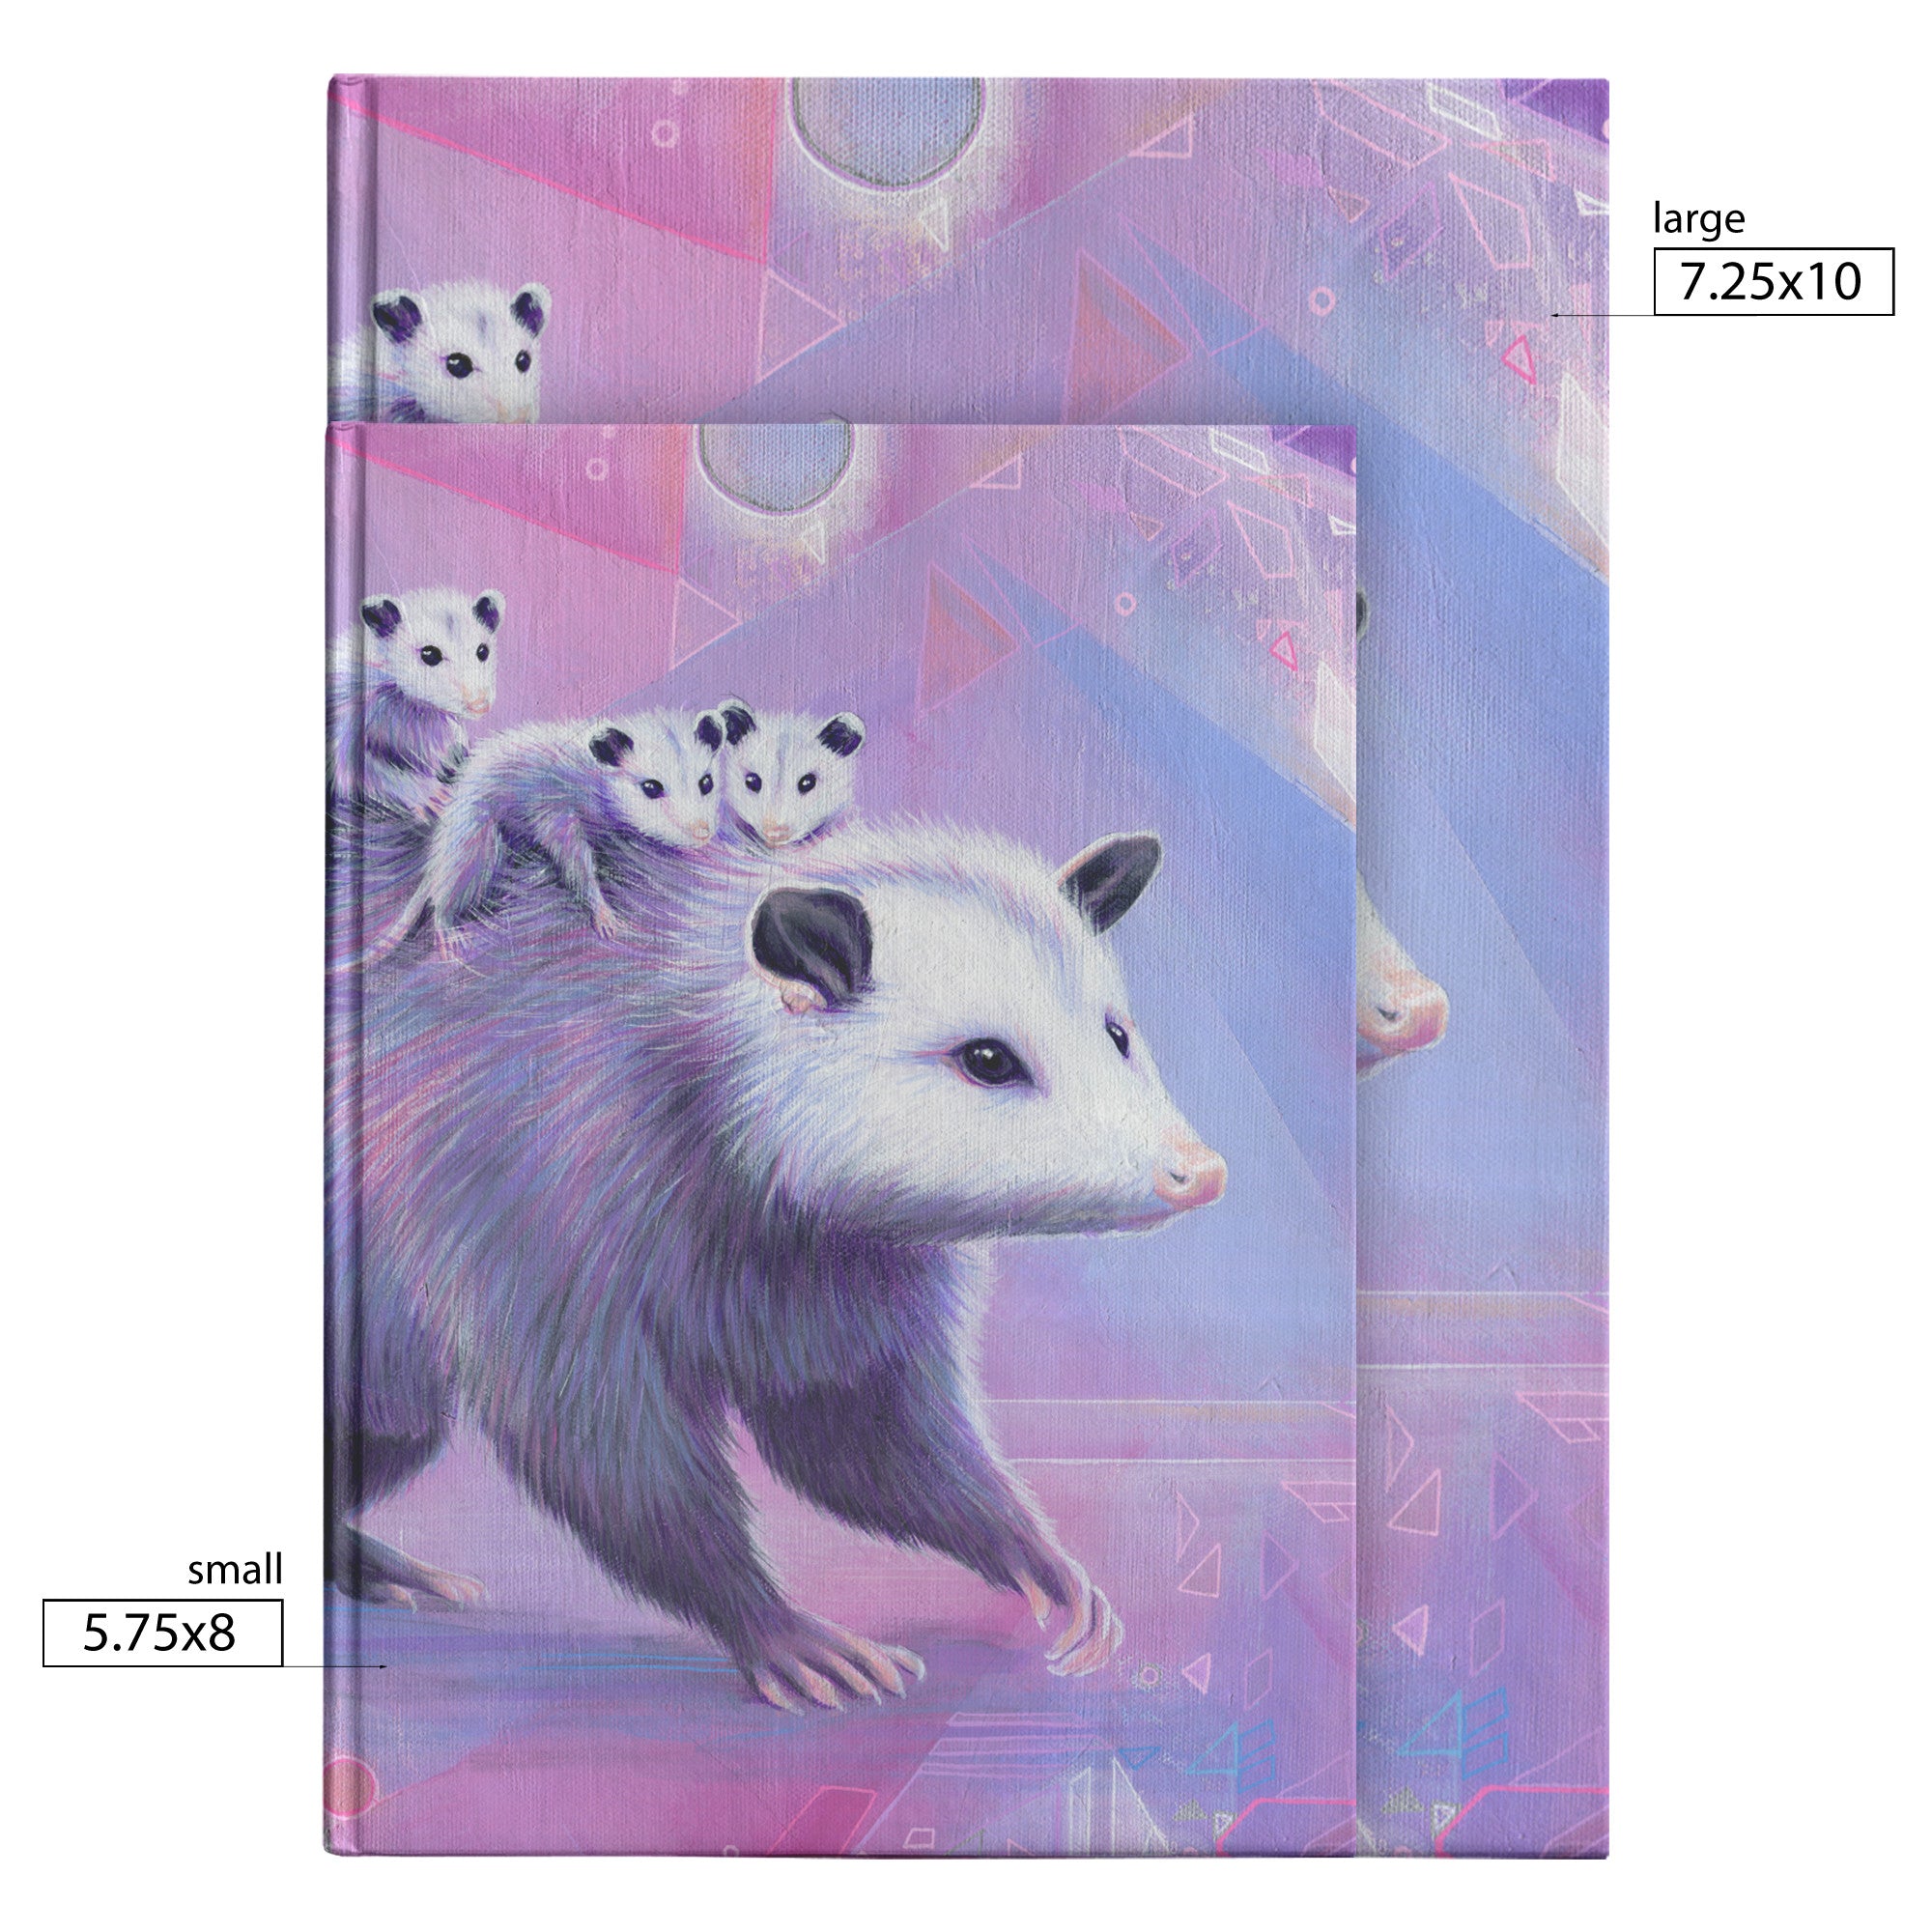 Mama Opossum Journal